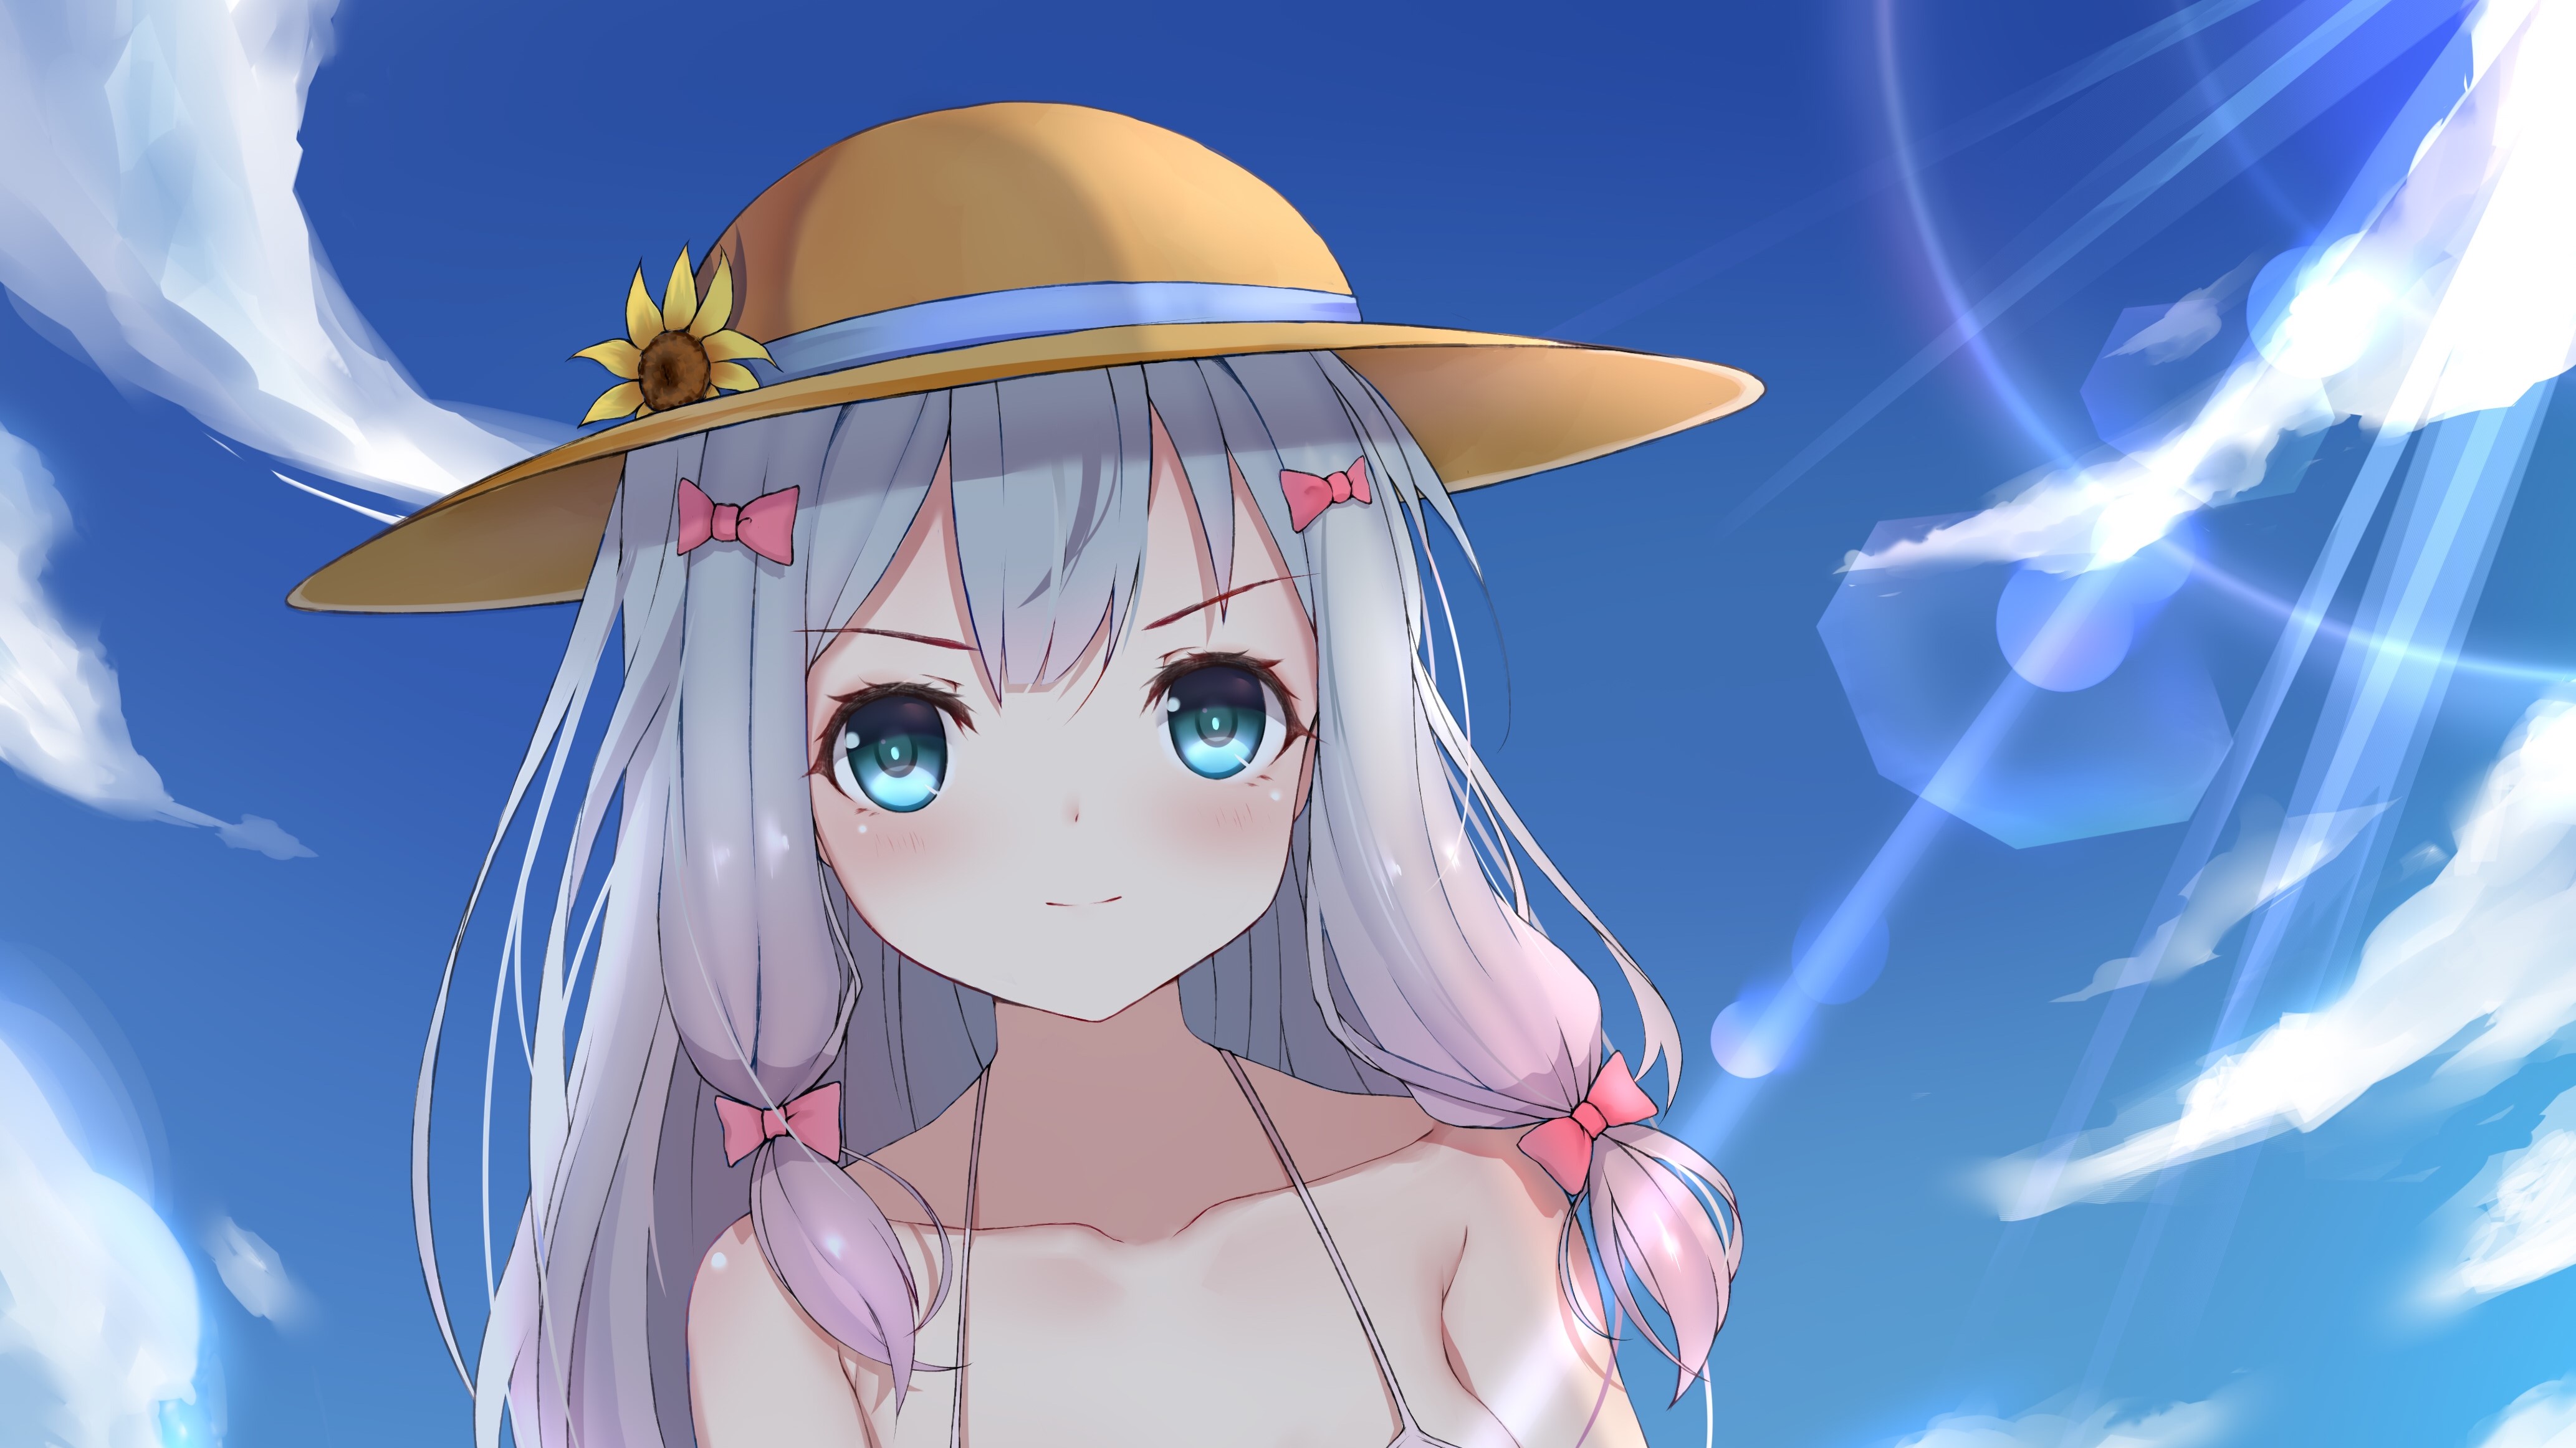 Zastaki.com - Девушка аниме  Эроманга-Сэнсэй в шляпке на фоне неба